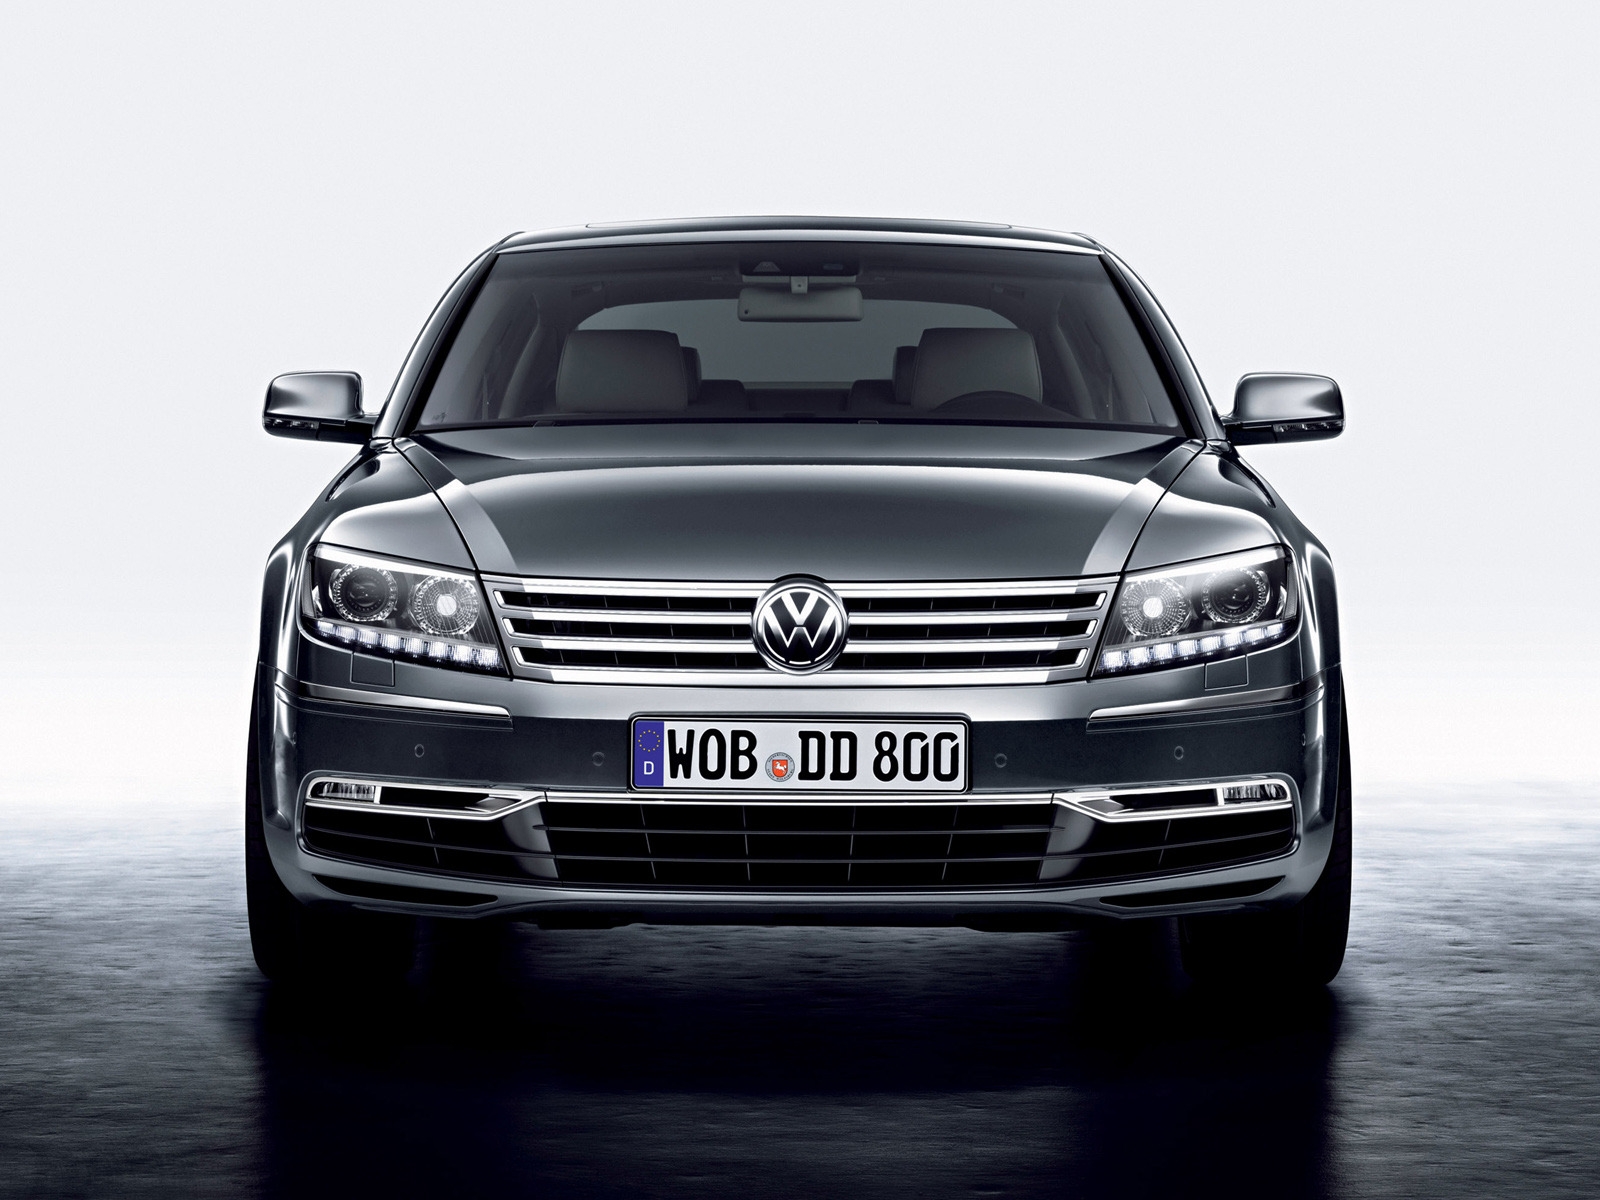 Volkswagen Phaeton Front for 1600 x 1200 resolution